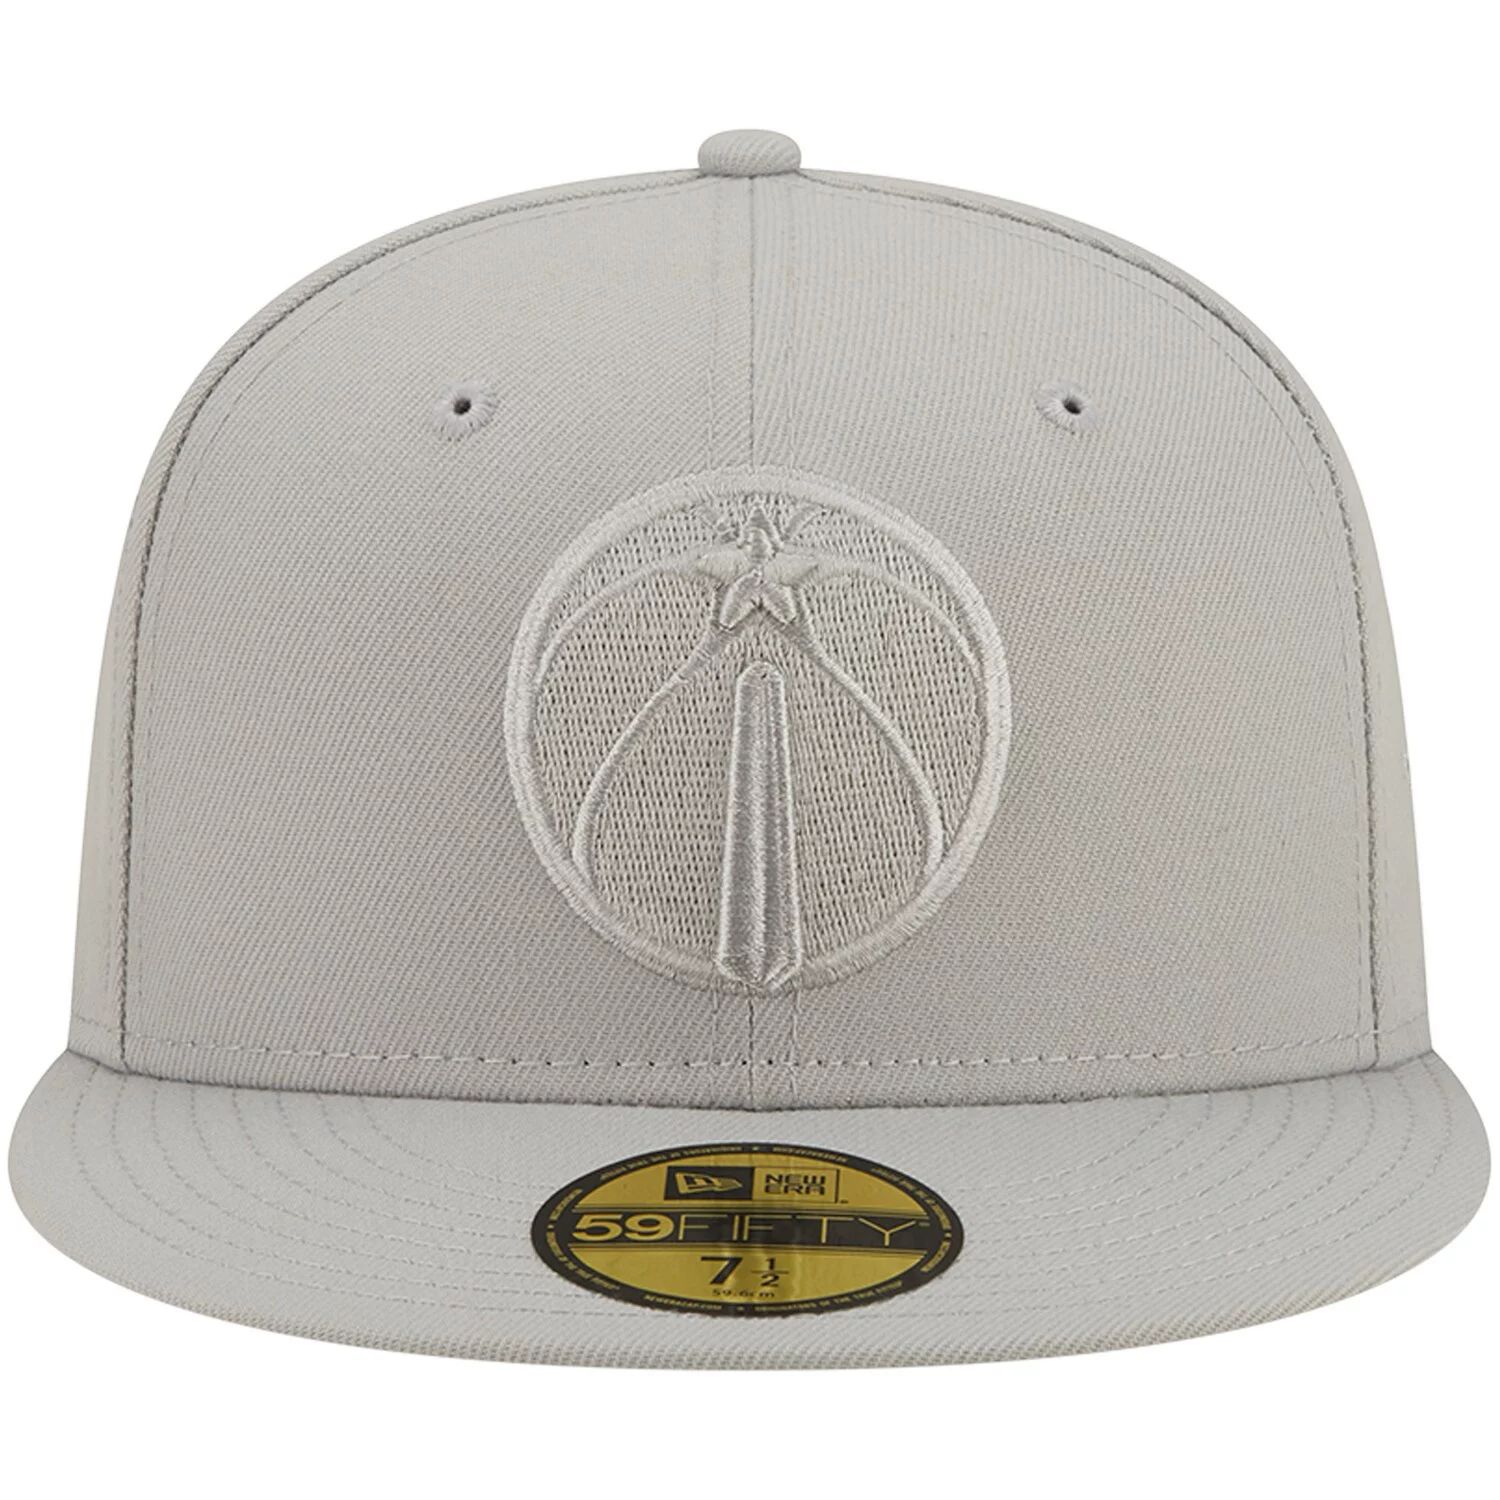 Мужская серая кепка New Era Washington Wizards с логотипом Color Pack 59FIFTY